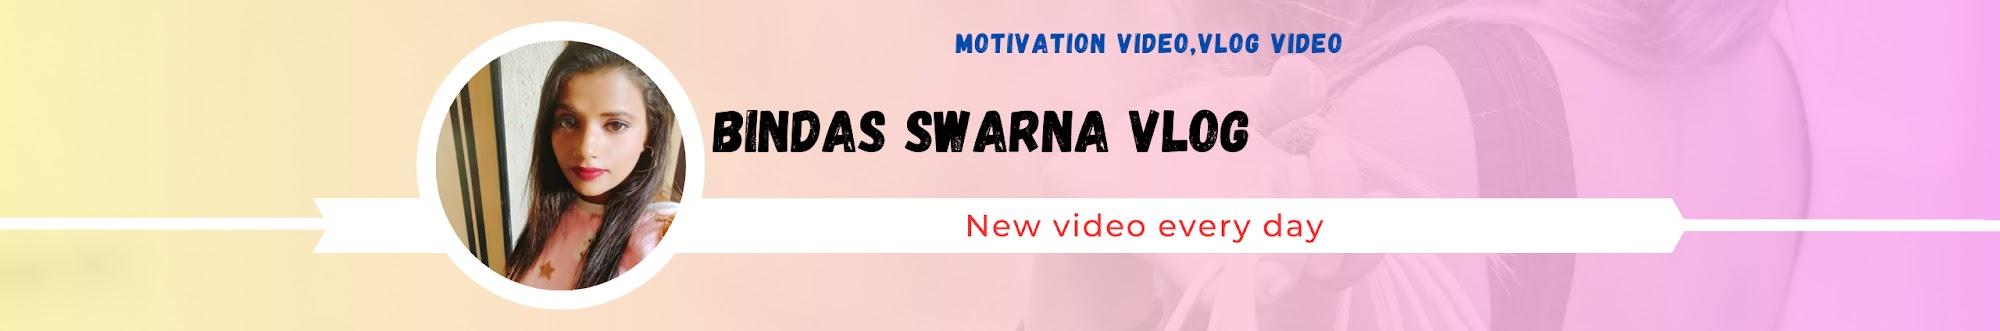 Bindas Swarna vlog